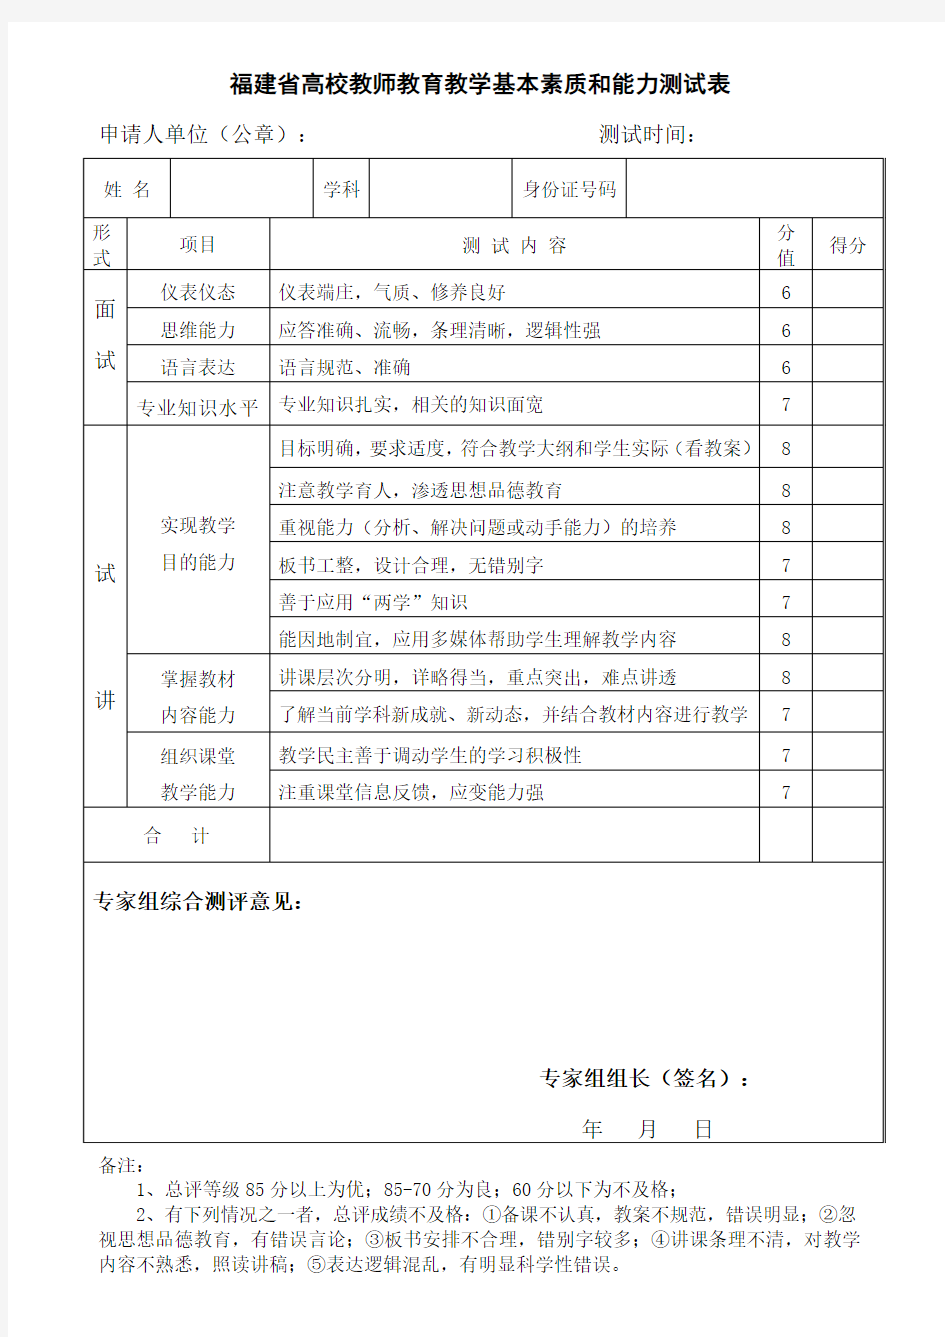 福建省高校教师教育教学基本素质和能力测试表